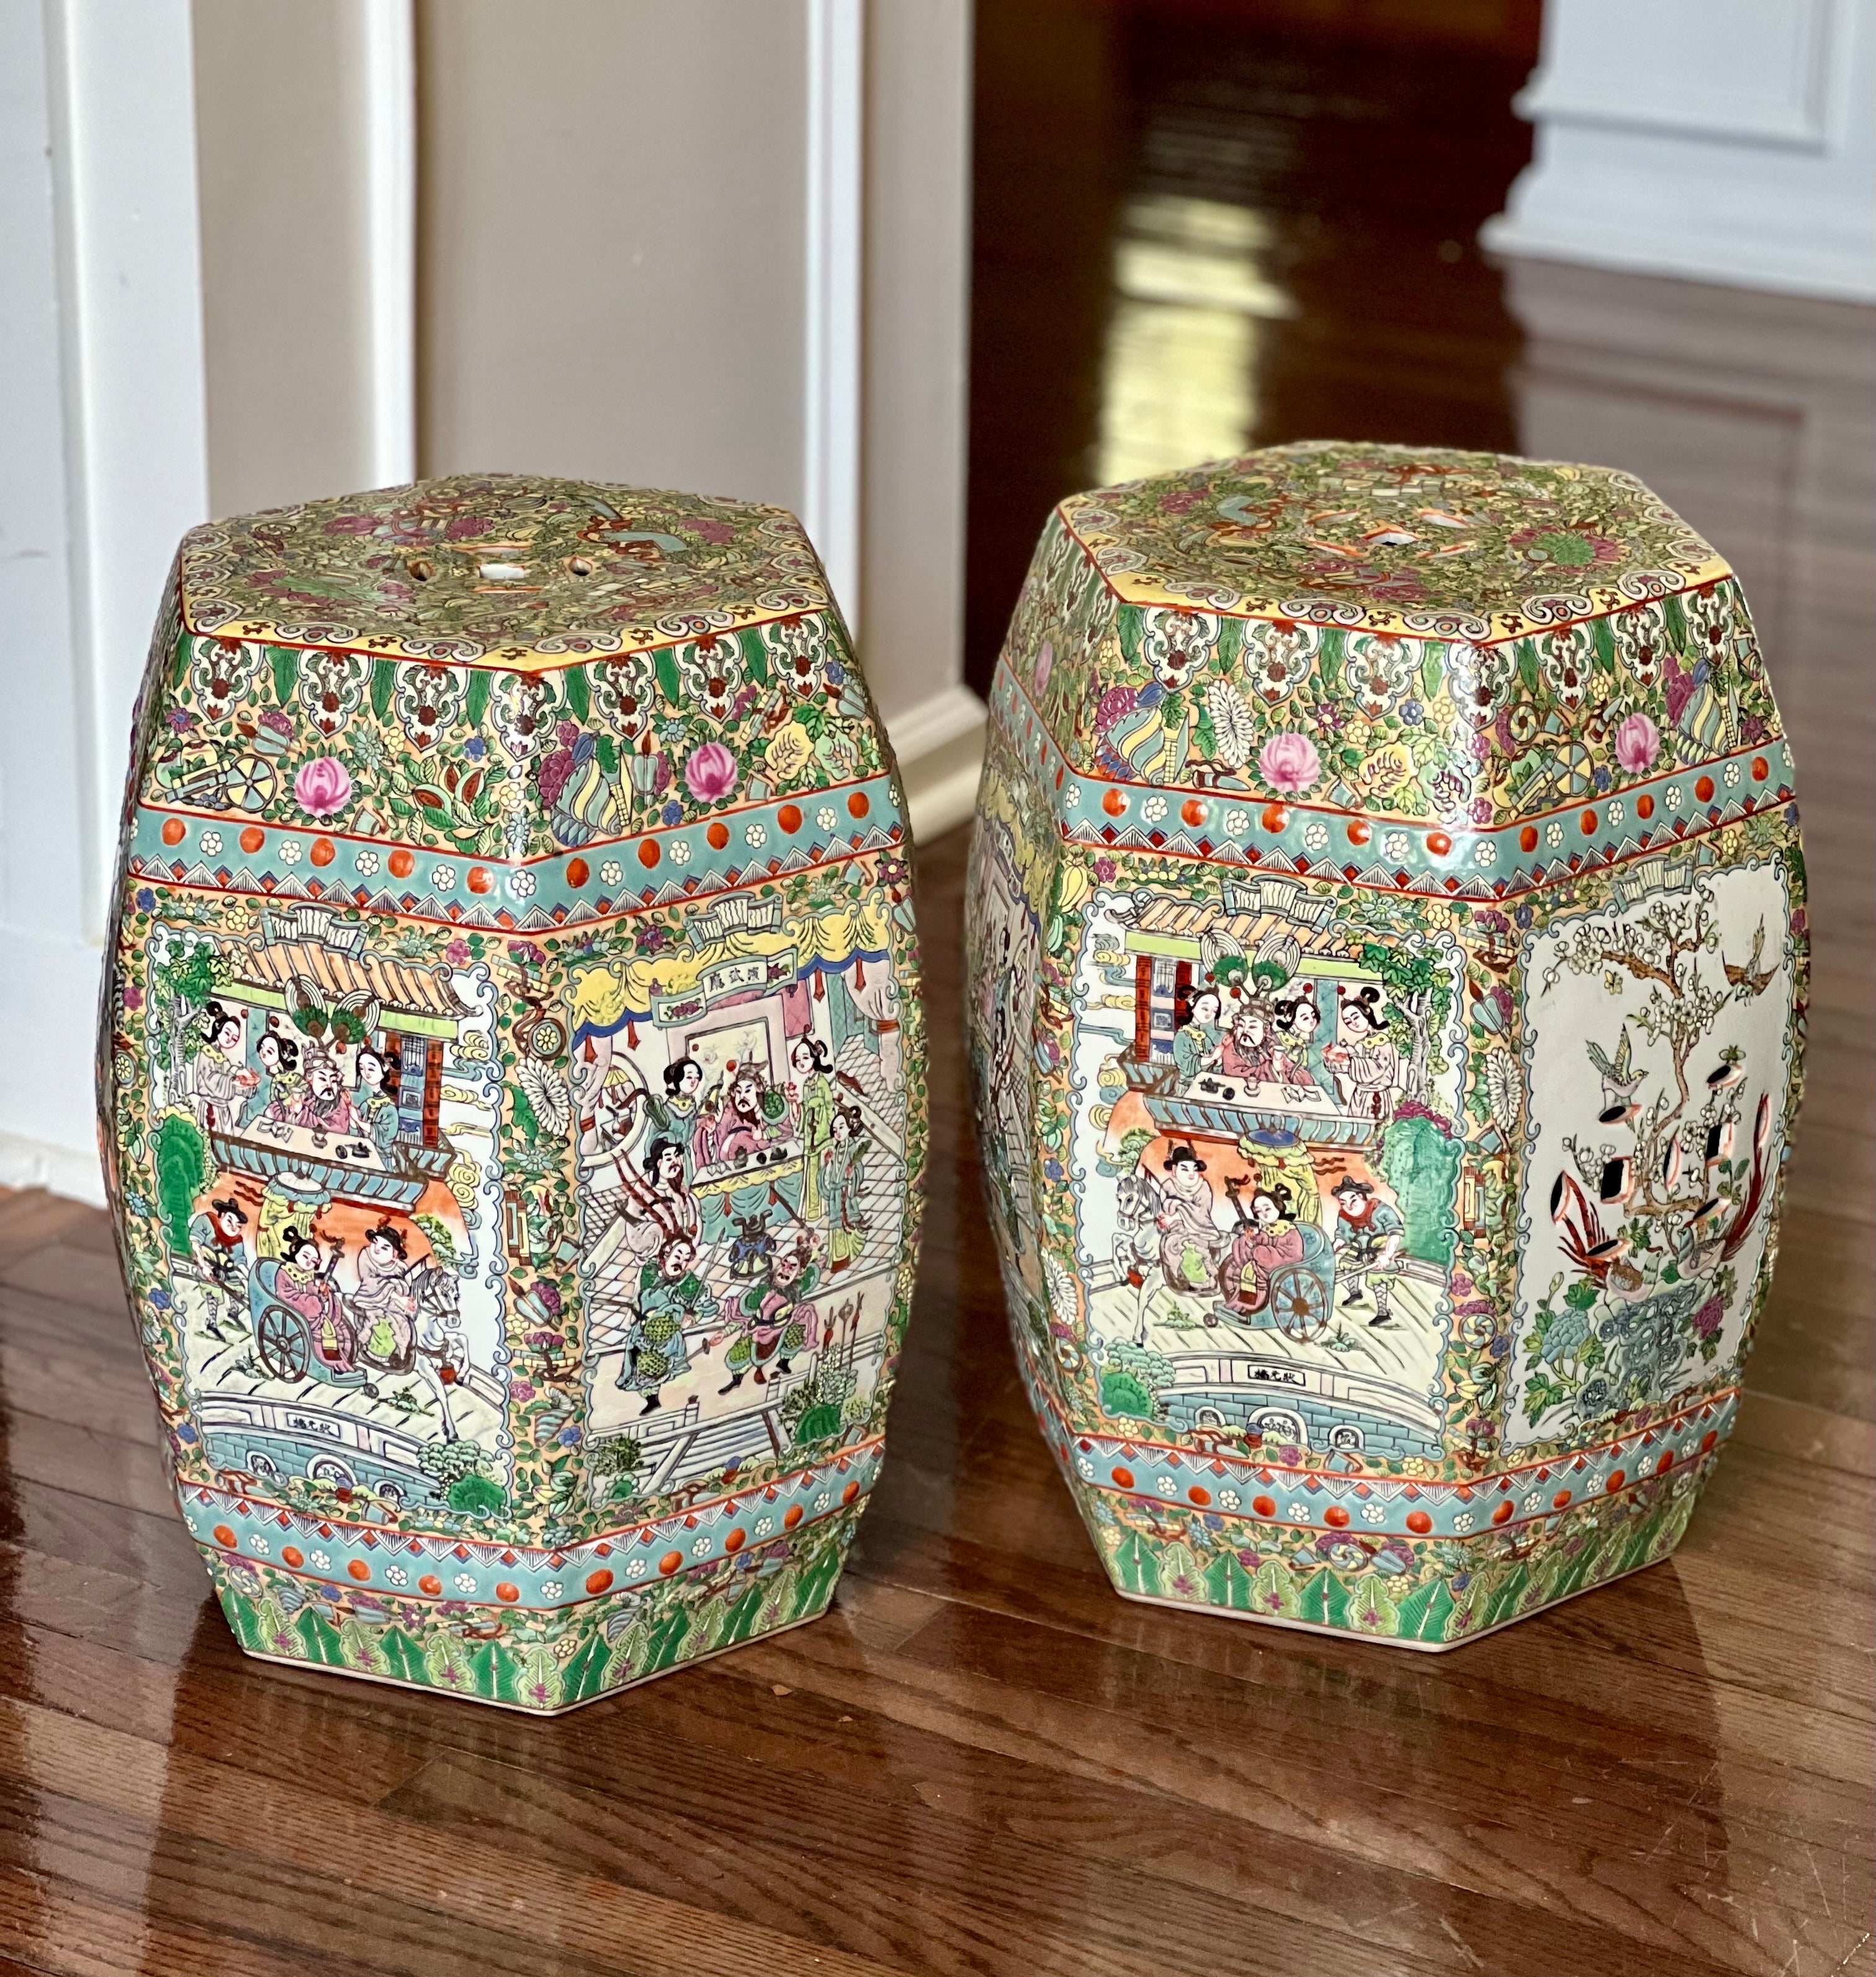 Paire de tabourets de jardin chinois en porcelaine peinte à la main, c. 1950.

Magnifique paire de tabourets à médaillon rose de style chinois Canton, de forme hexagonale. Ils présentent des motifs complexes et réticulés avec des jardins, des motifs